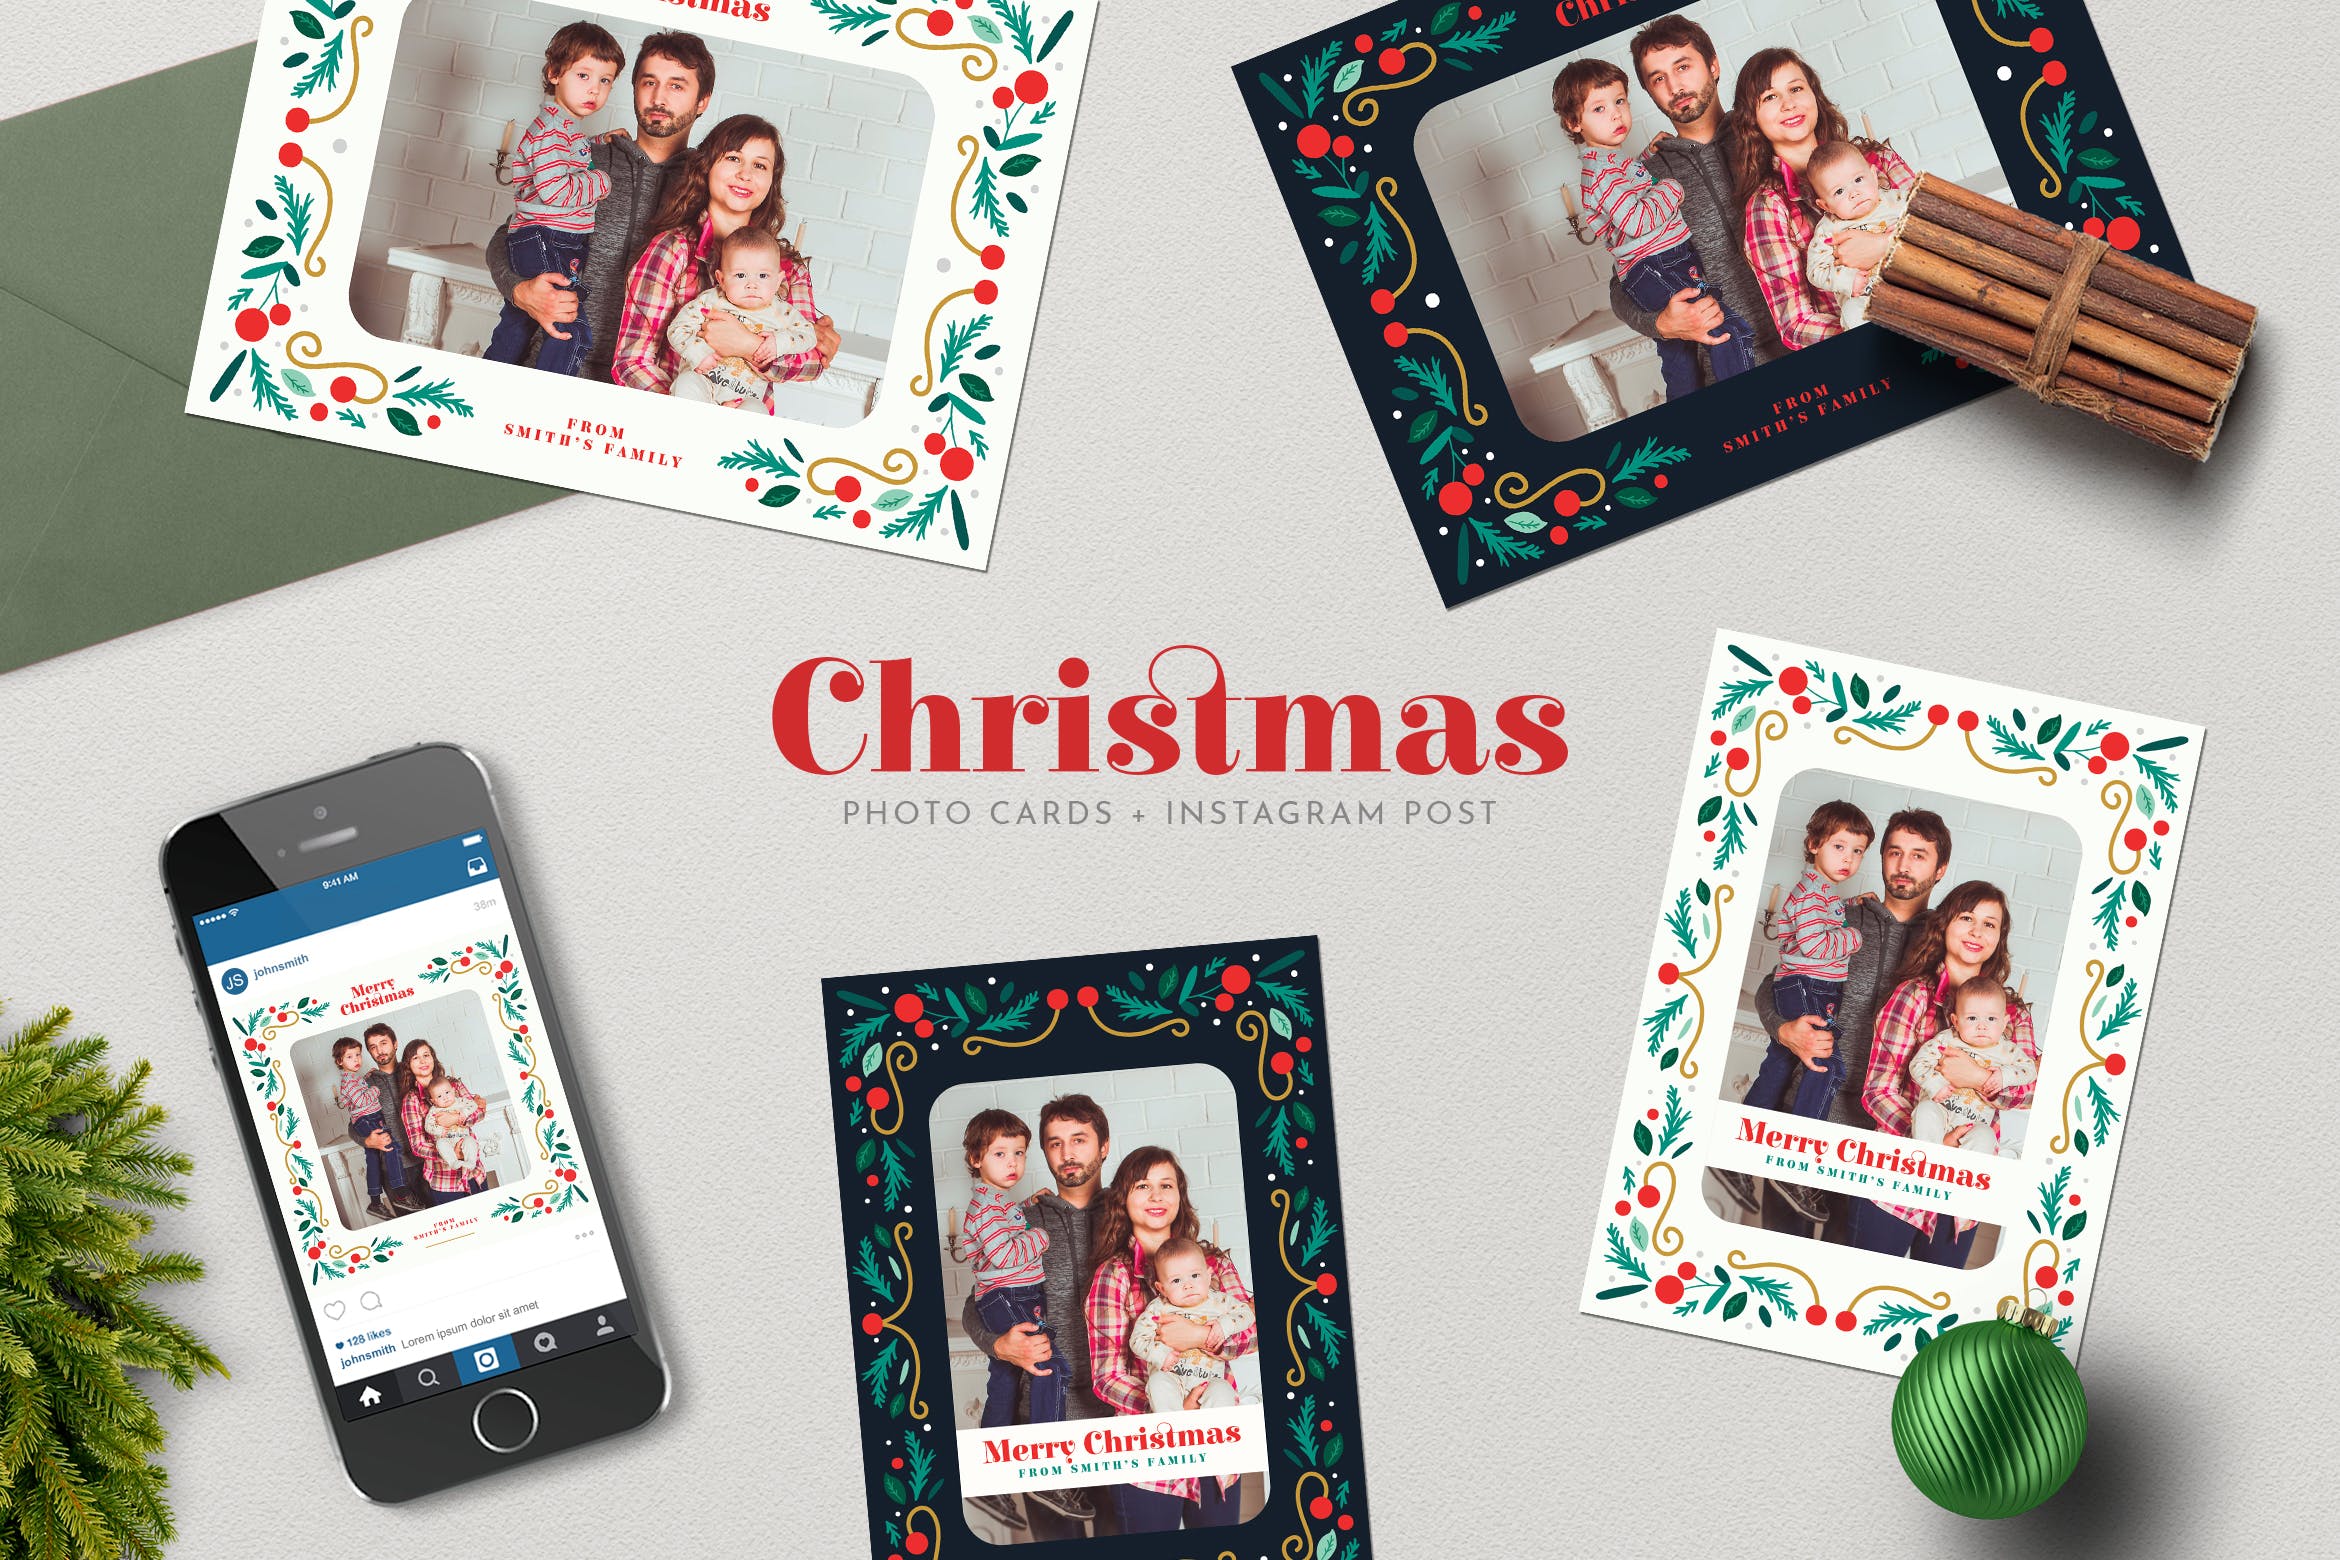 圣诞节照片明信片&Instagram贴图设计模板素材库精选 Christmas PhotoCards +Instagram Post插图